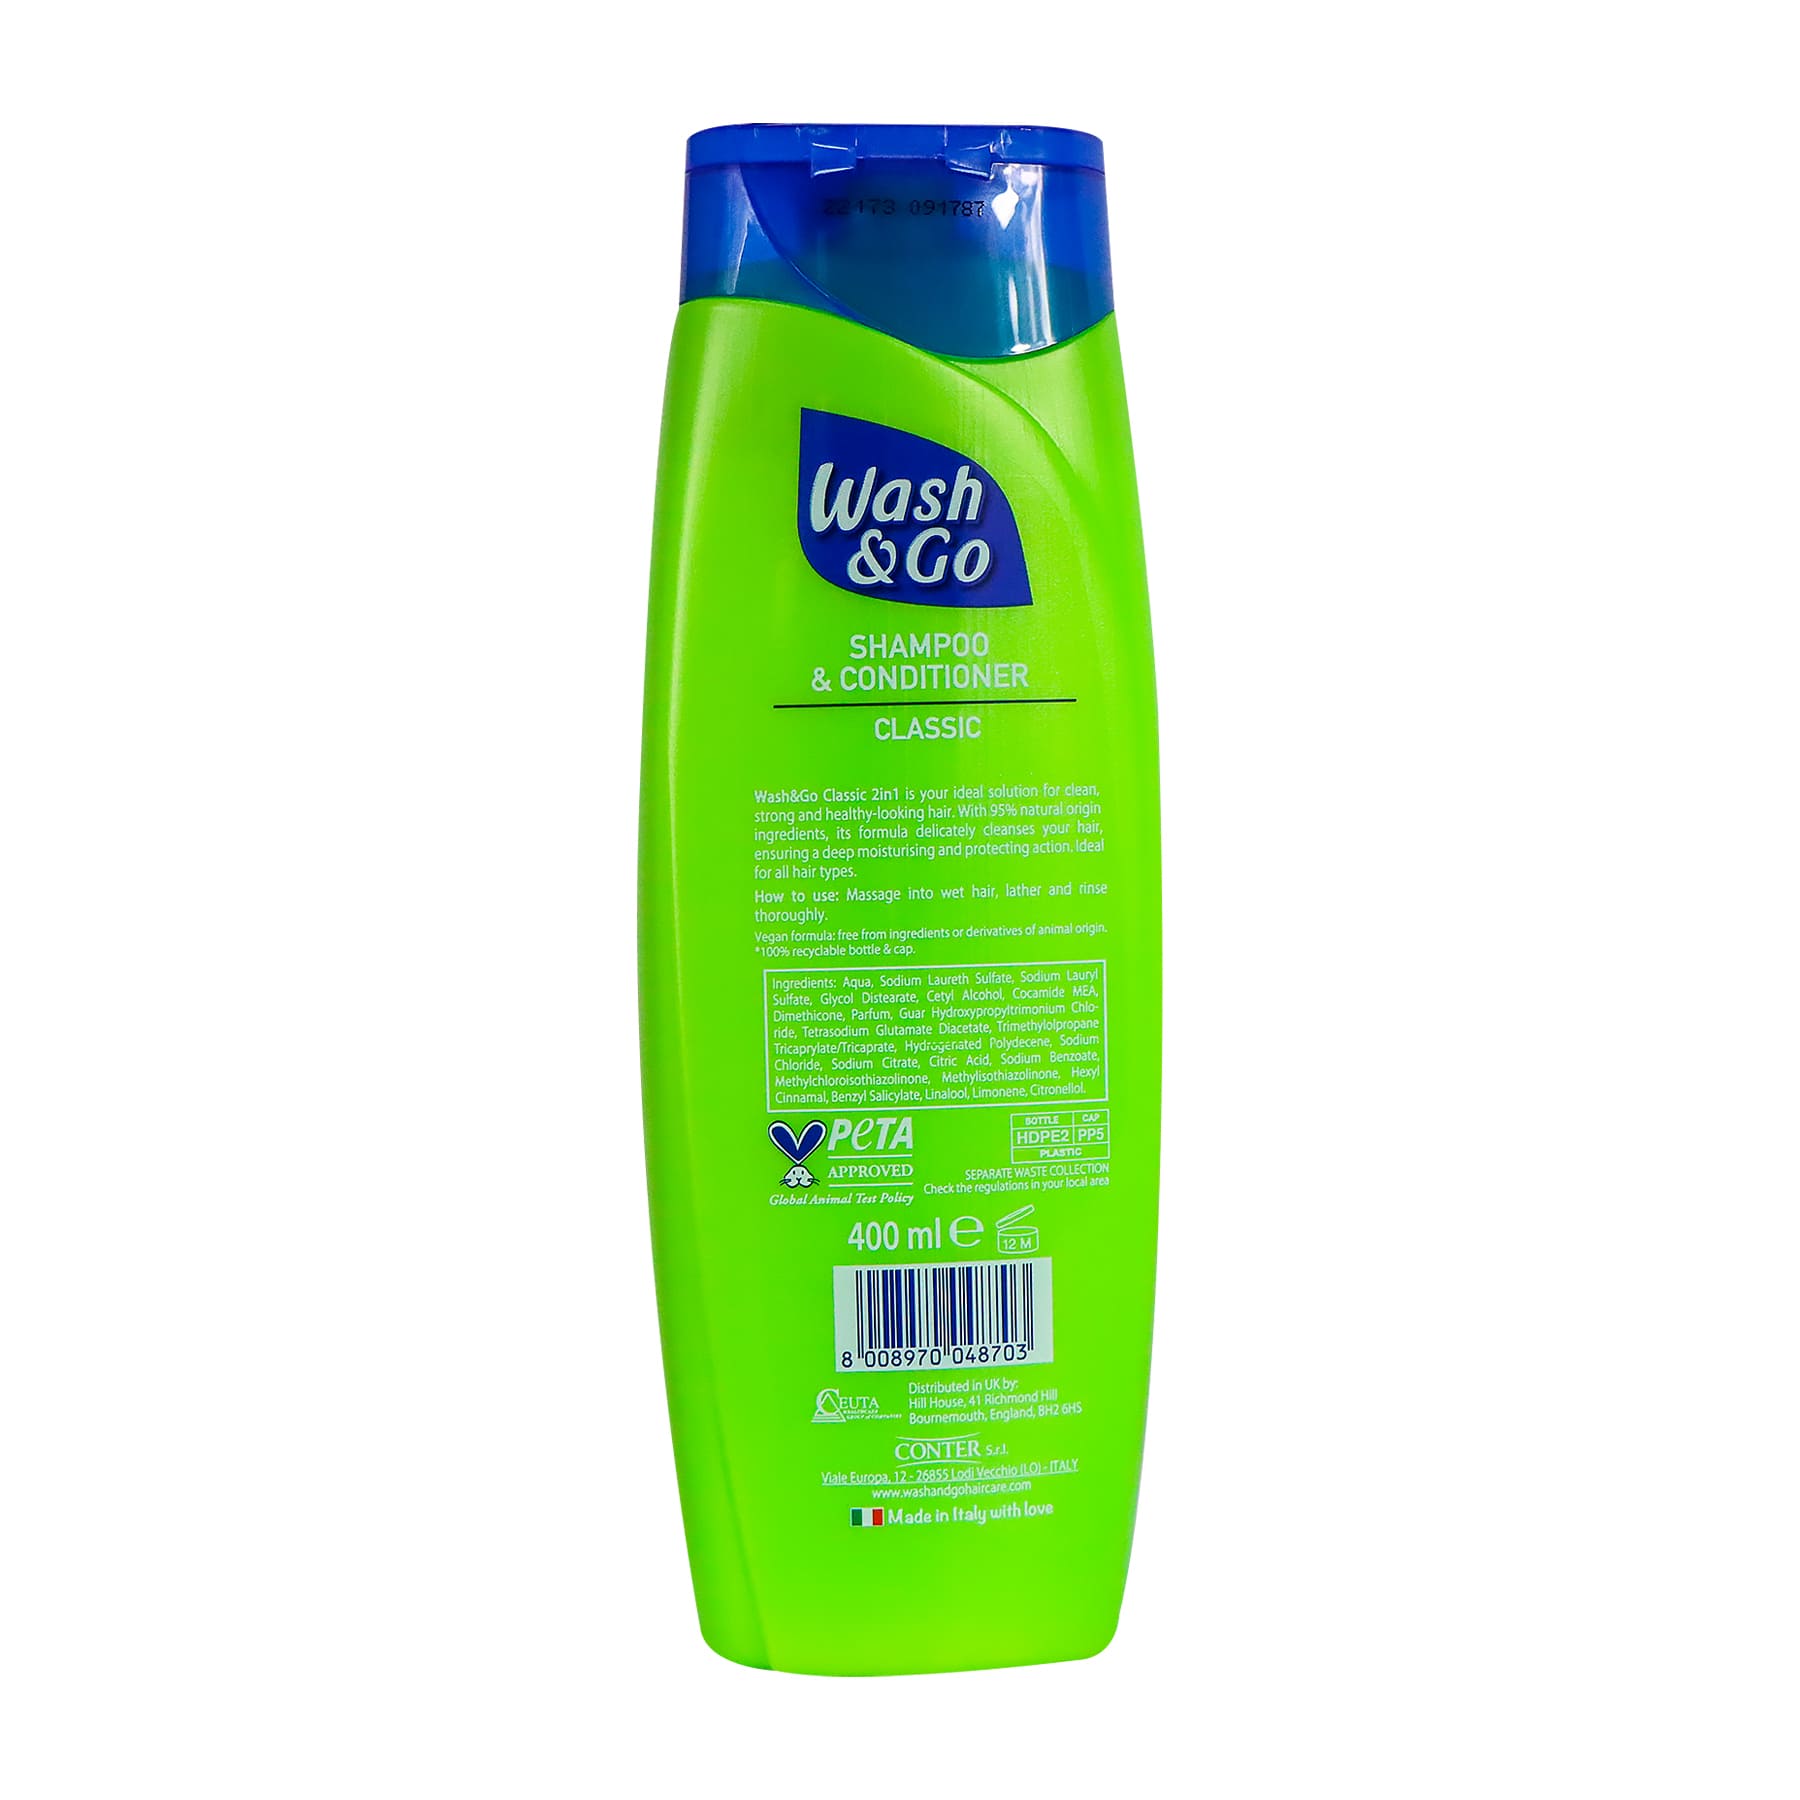 Wash & Go 2-in-1 Shampoo & Conditioner 400ml